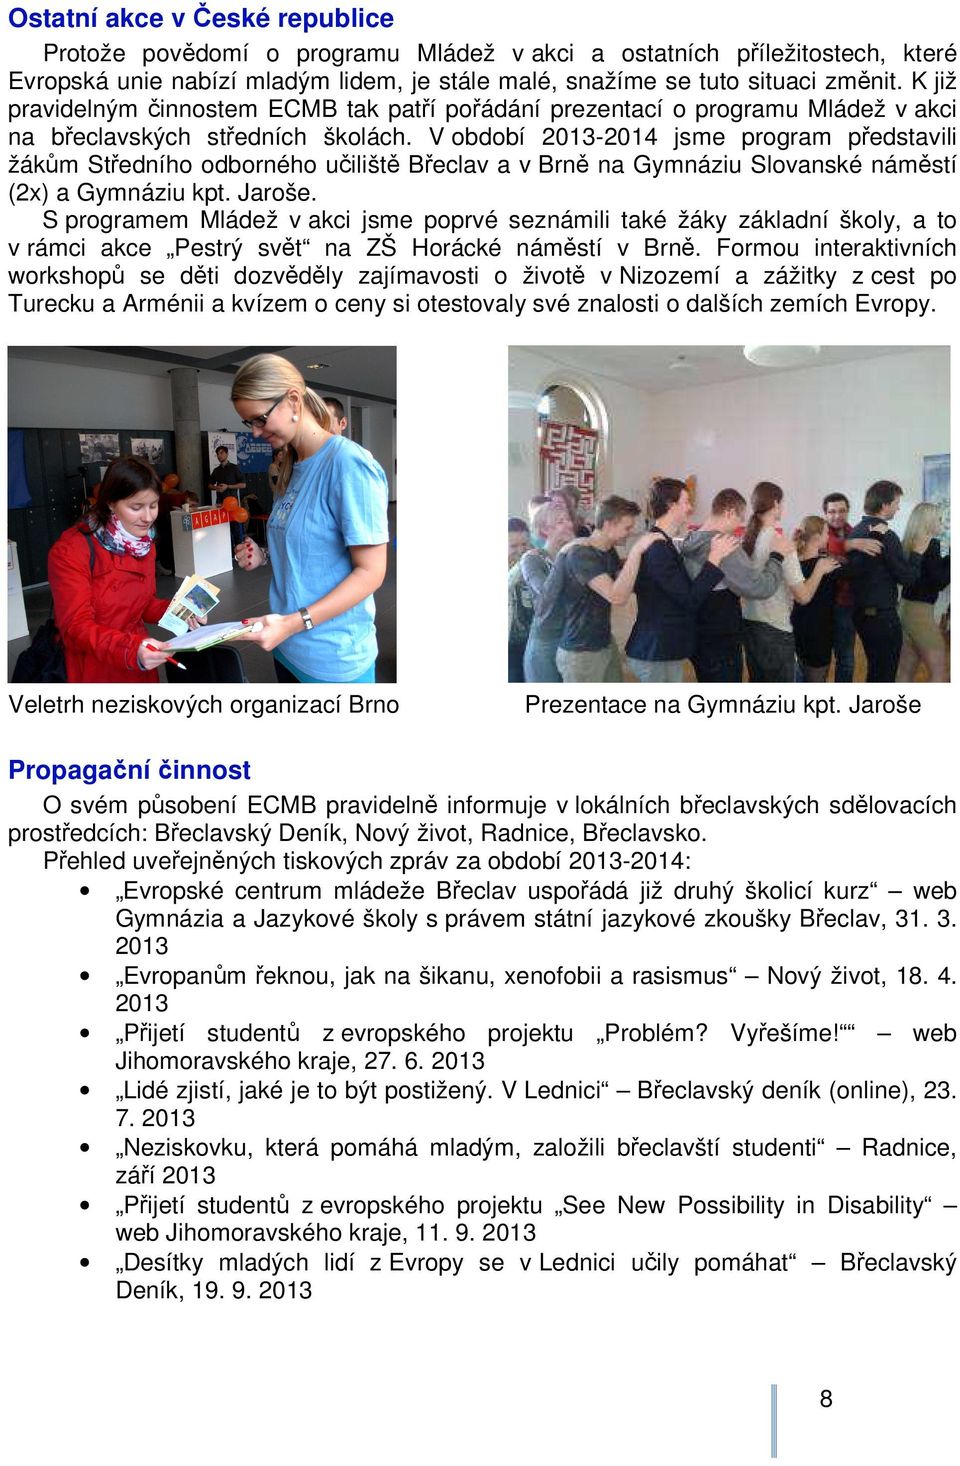 V období 2013-2014 jsme program představili žákům Středního odborného učiliště Břeclav a v Brně na Gymnáziu Slovanské náměstí (2x) a Gymnáziu kpt. Jaroše.